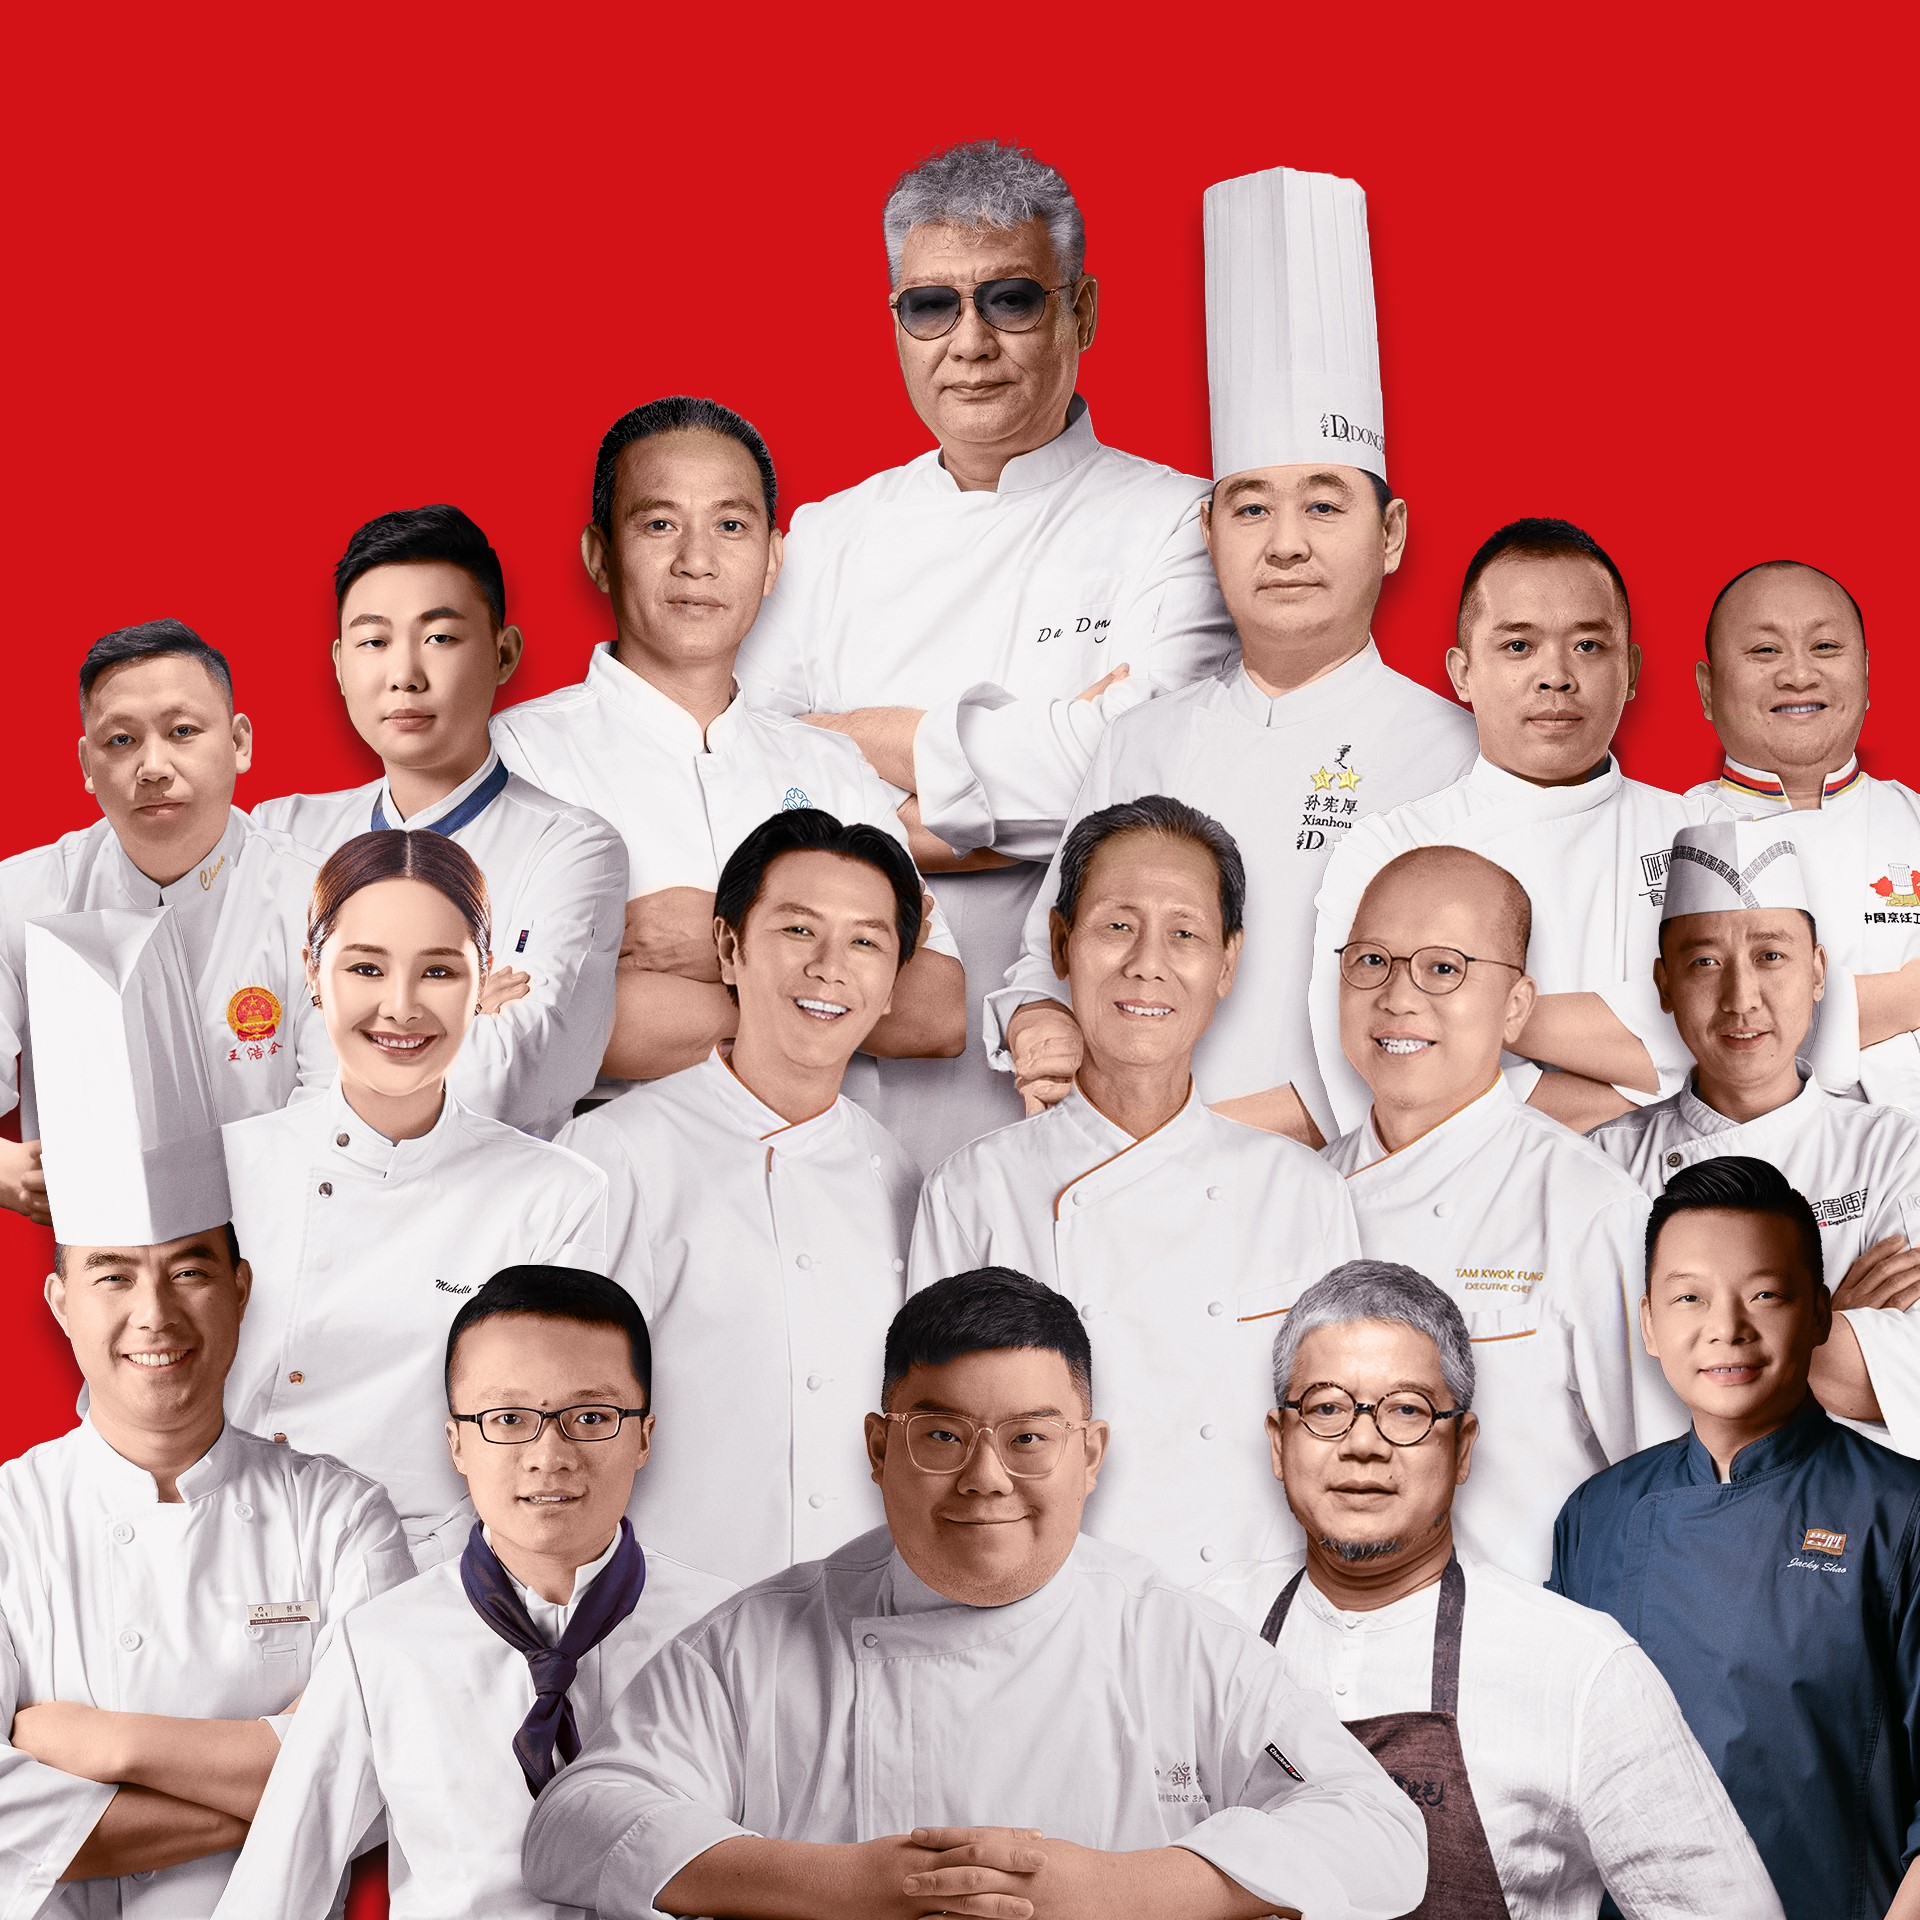 2021 Wynn Guest Chef Series